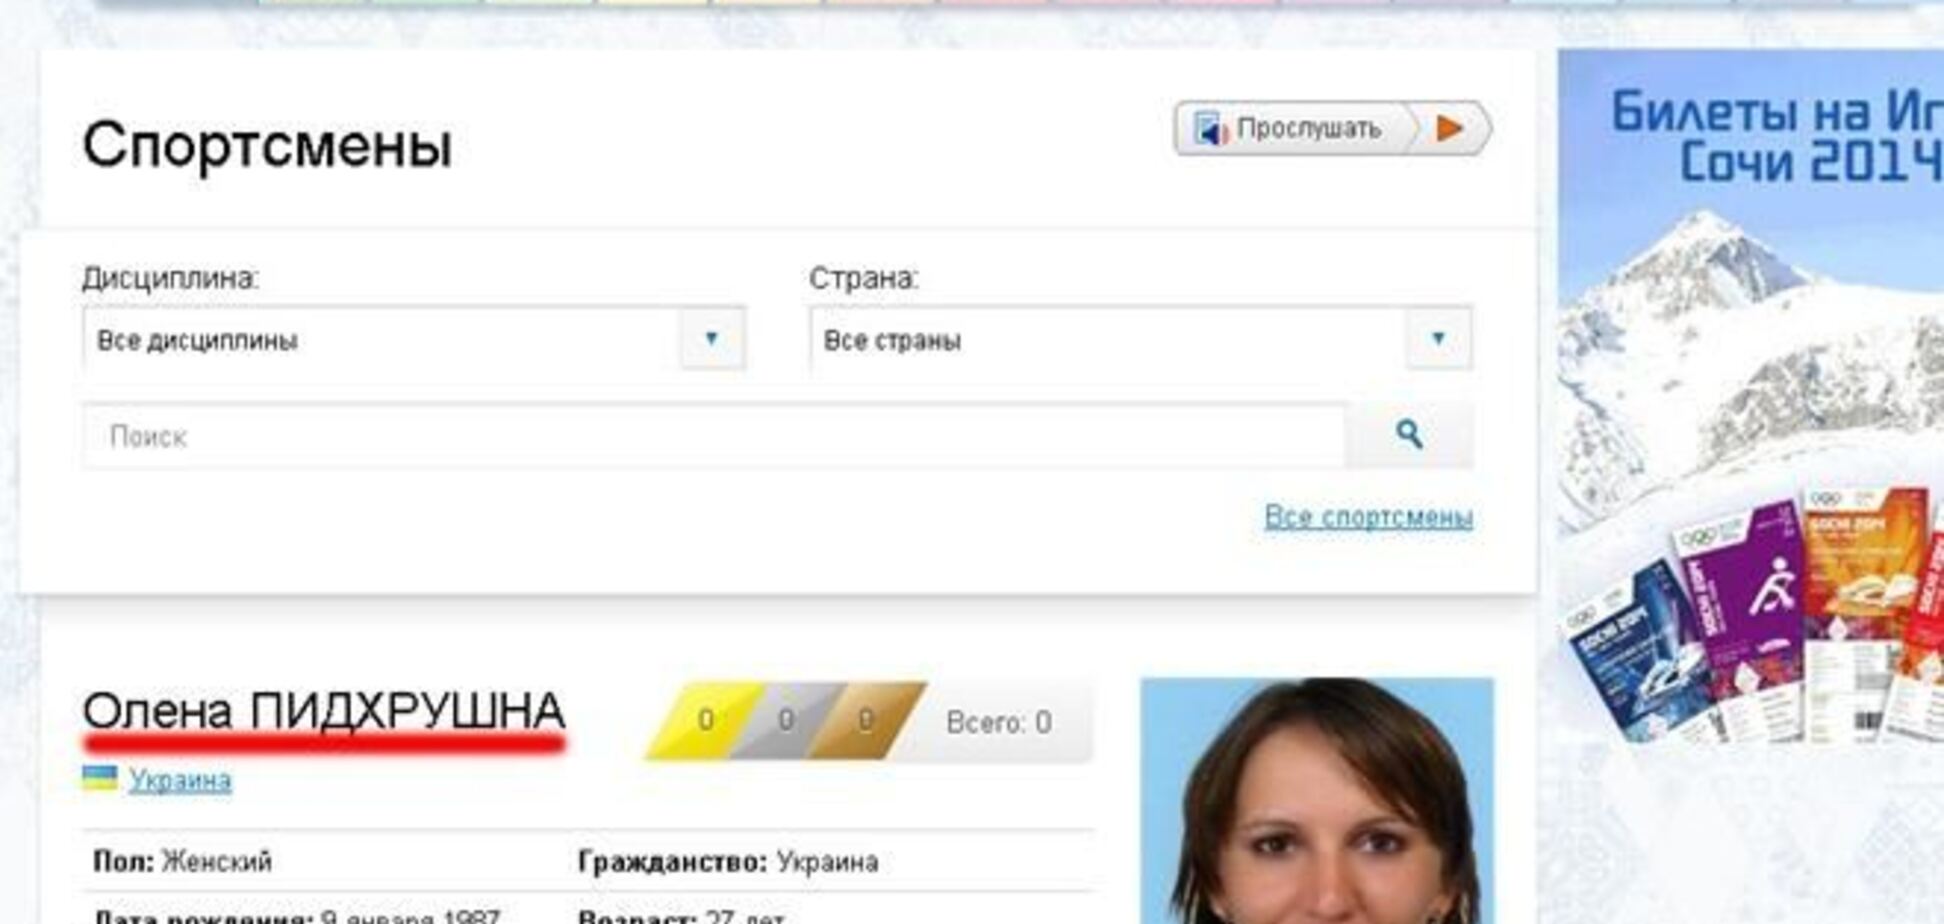 Сайт Олимпиады сделал украинских спортсменов россиянами 